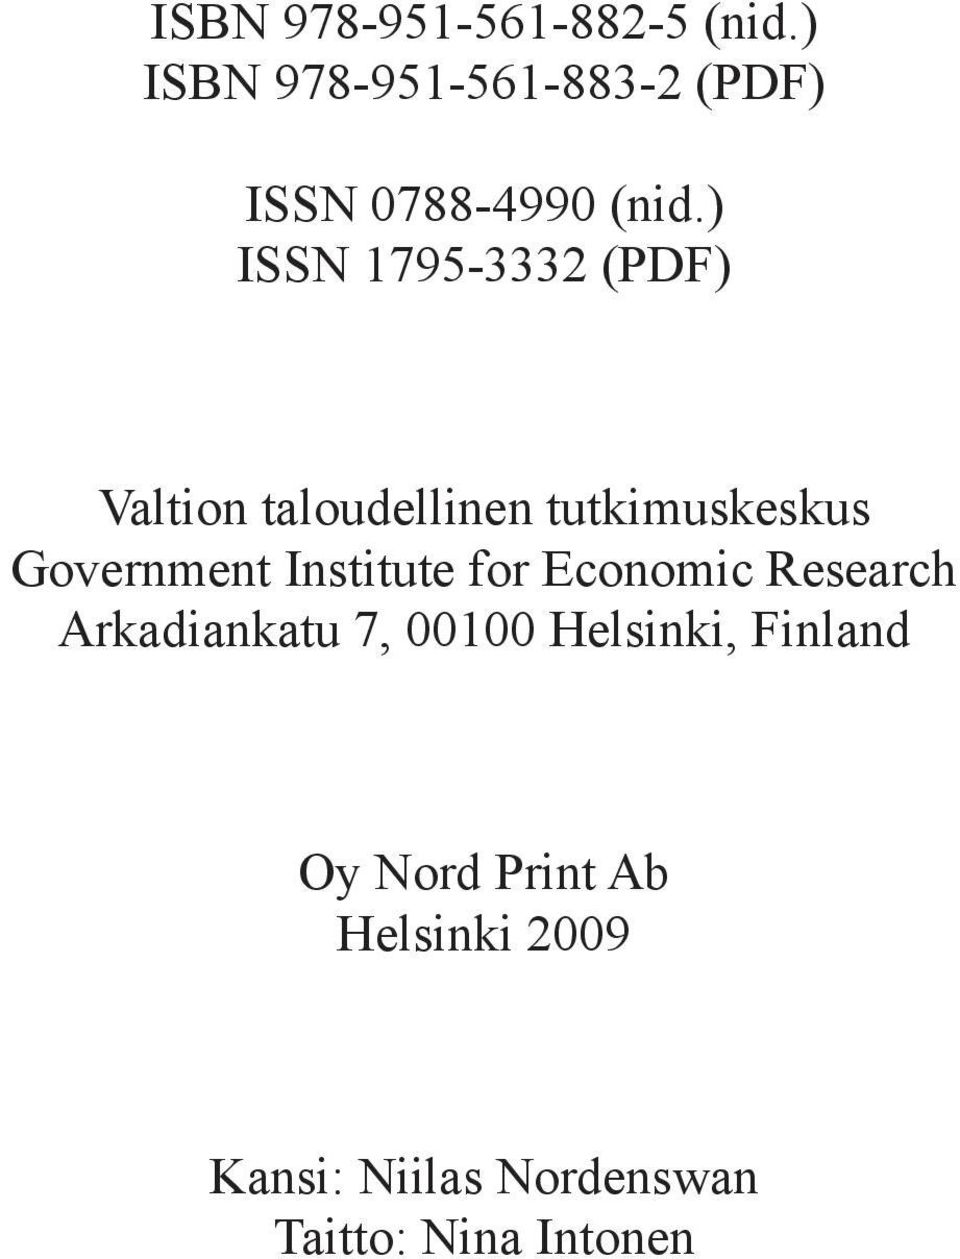 ) ISSN 1795-3332 (PDF) Valtion taloudellinen tutkimuskeskus Government